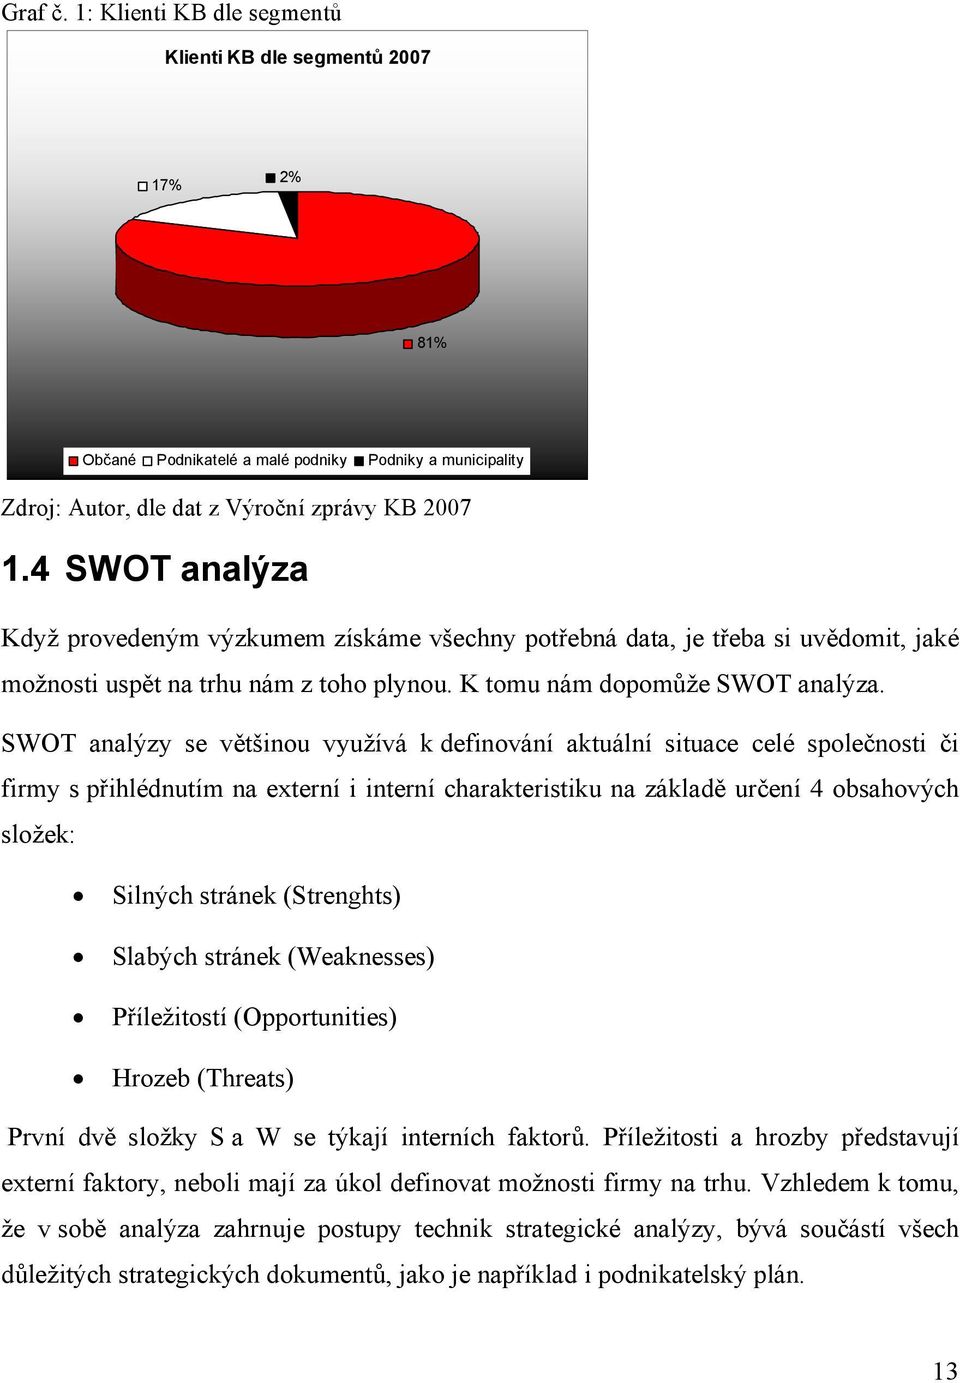 SWOT analýzy se většinou využívá k definování aktuální situace celé společnosti či firmy s přihlédnutím na externí i interní charakteristiku na základě určení 4 obsahových složek: Silných stránek